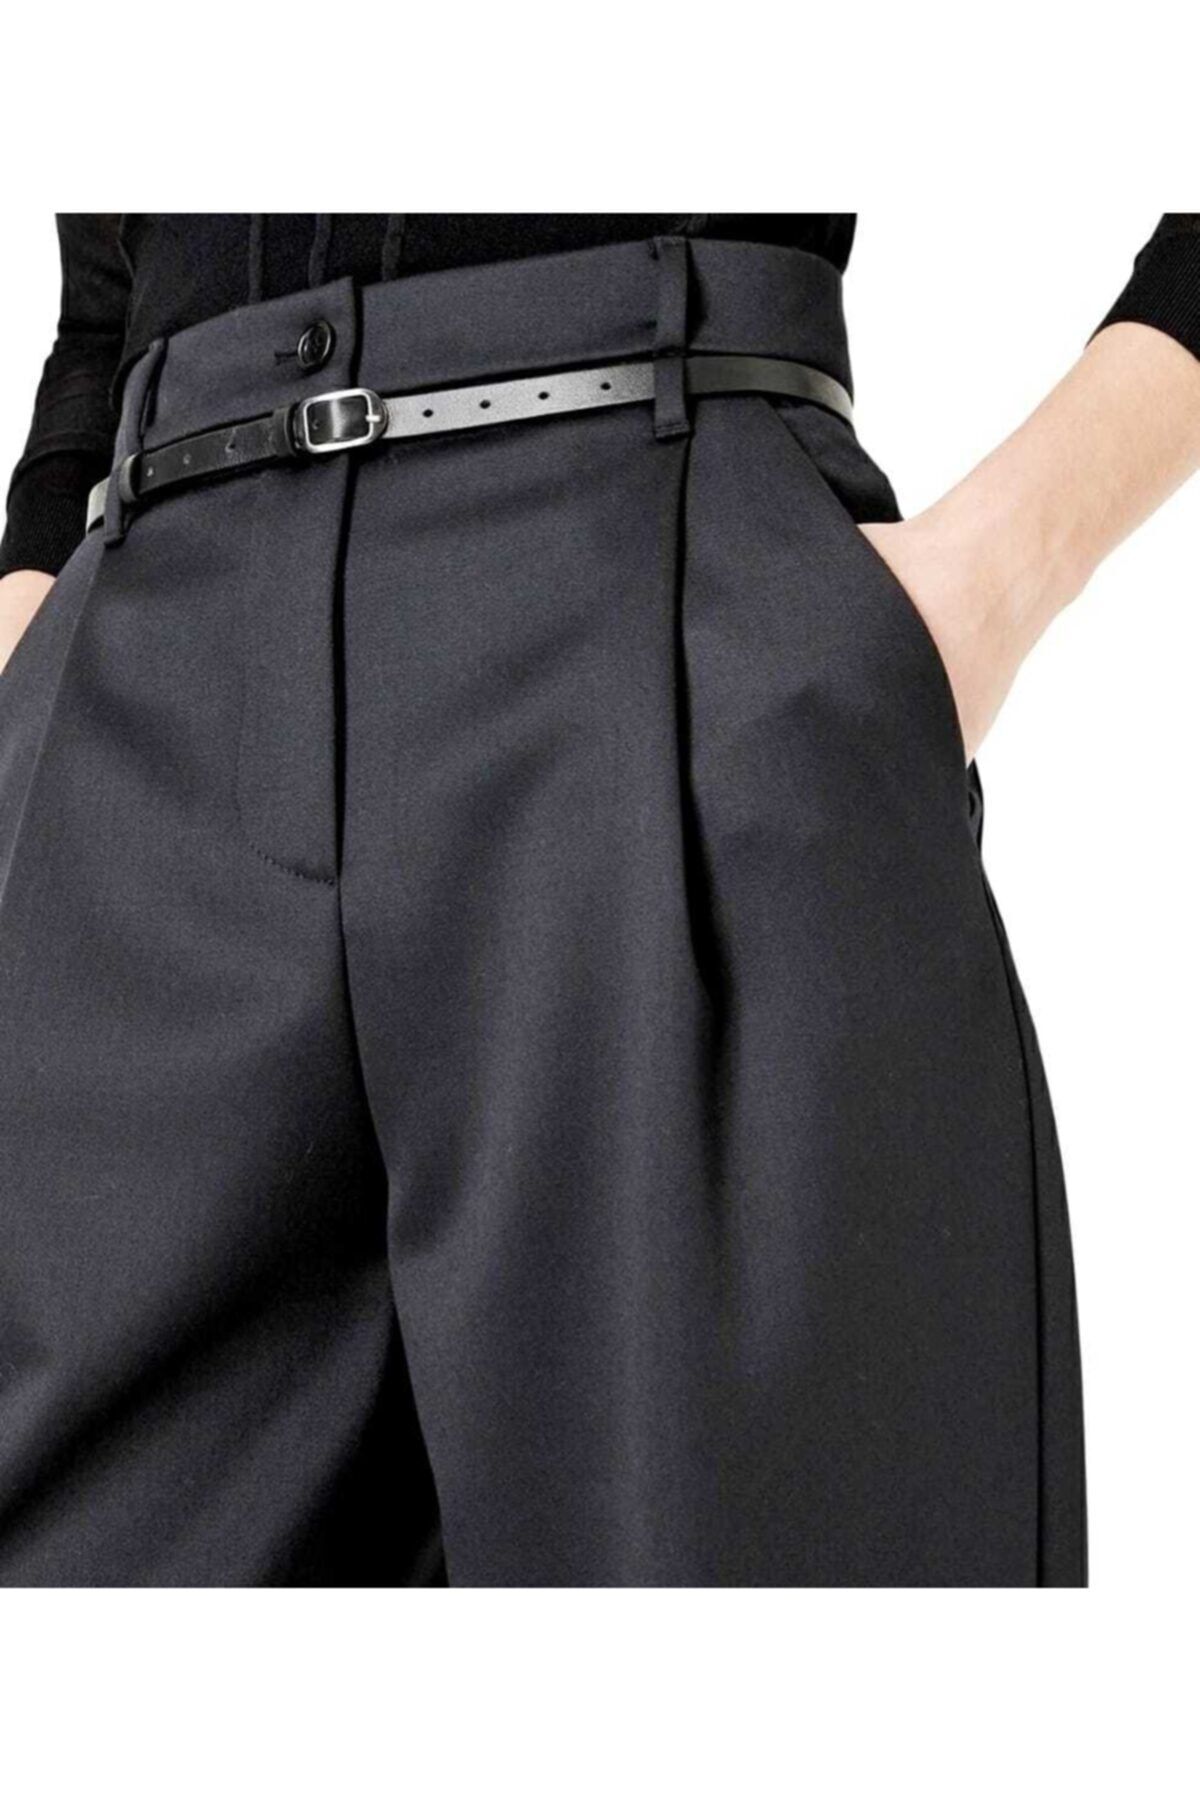 Sheen Dmr Kadın 4 Mevsim Giyilebilen Yünlü Likralı Yüksek Bel Bol Paça Haute Couture Kumaş Pantolon